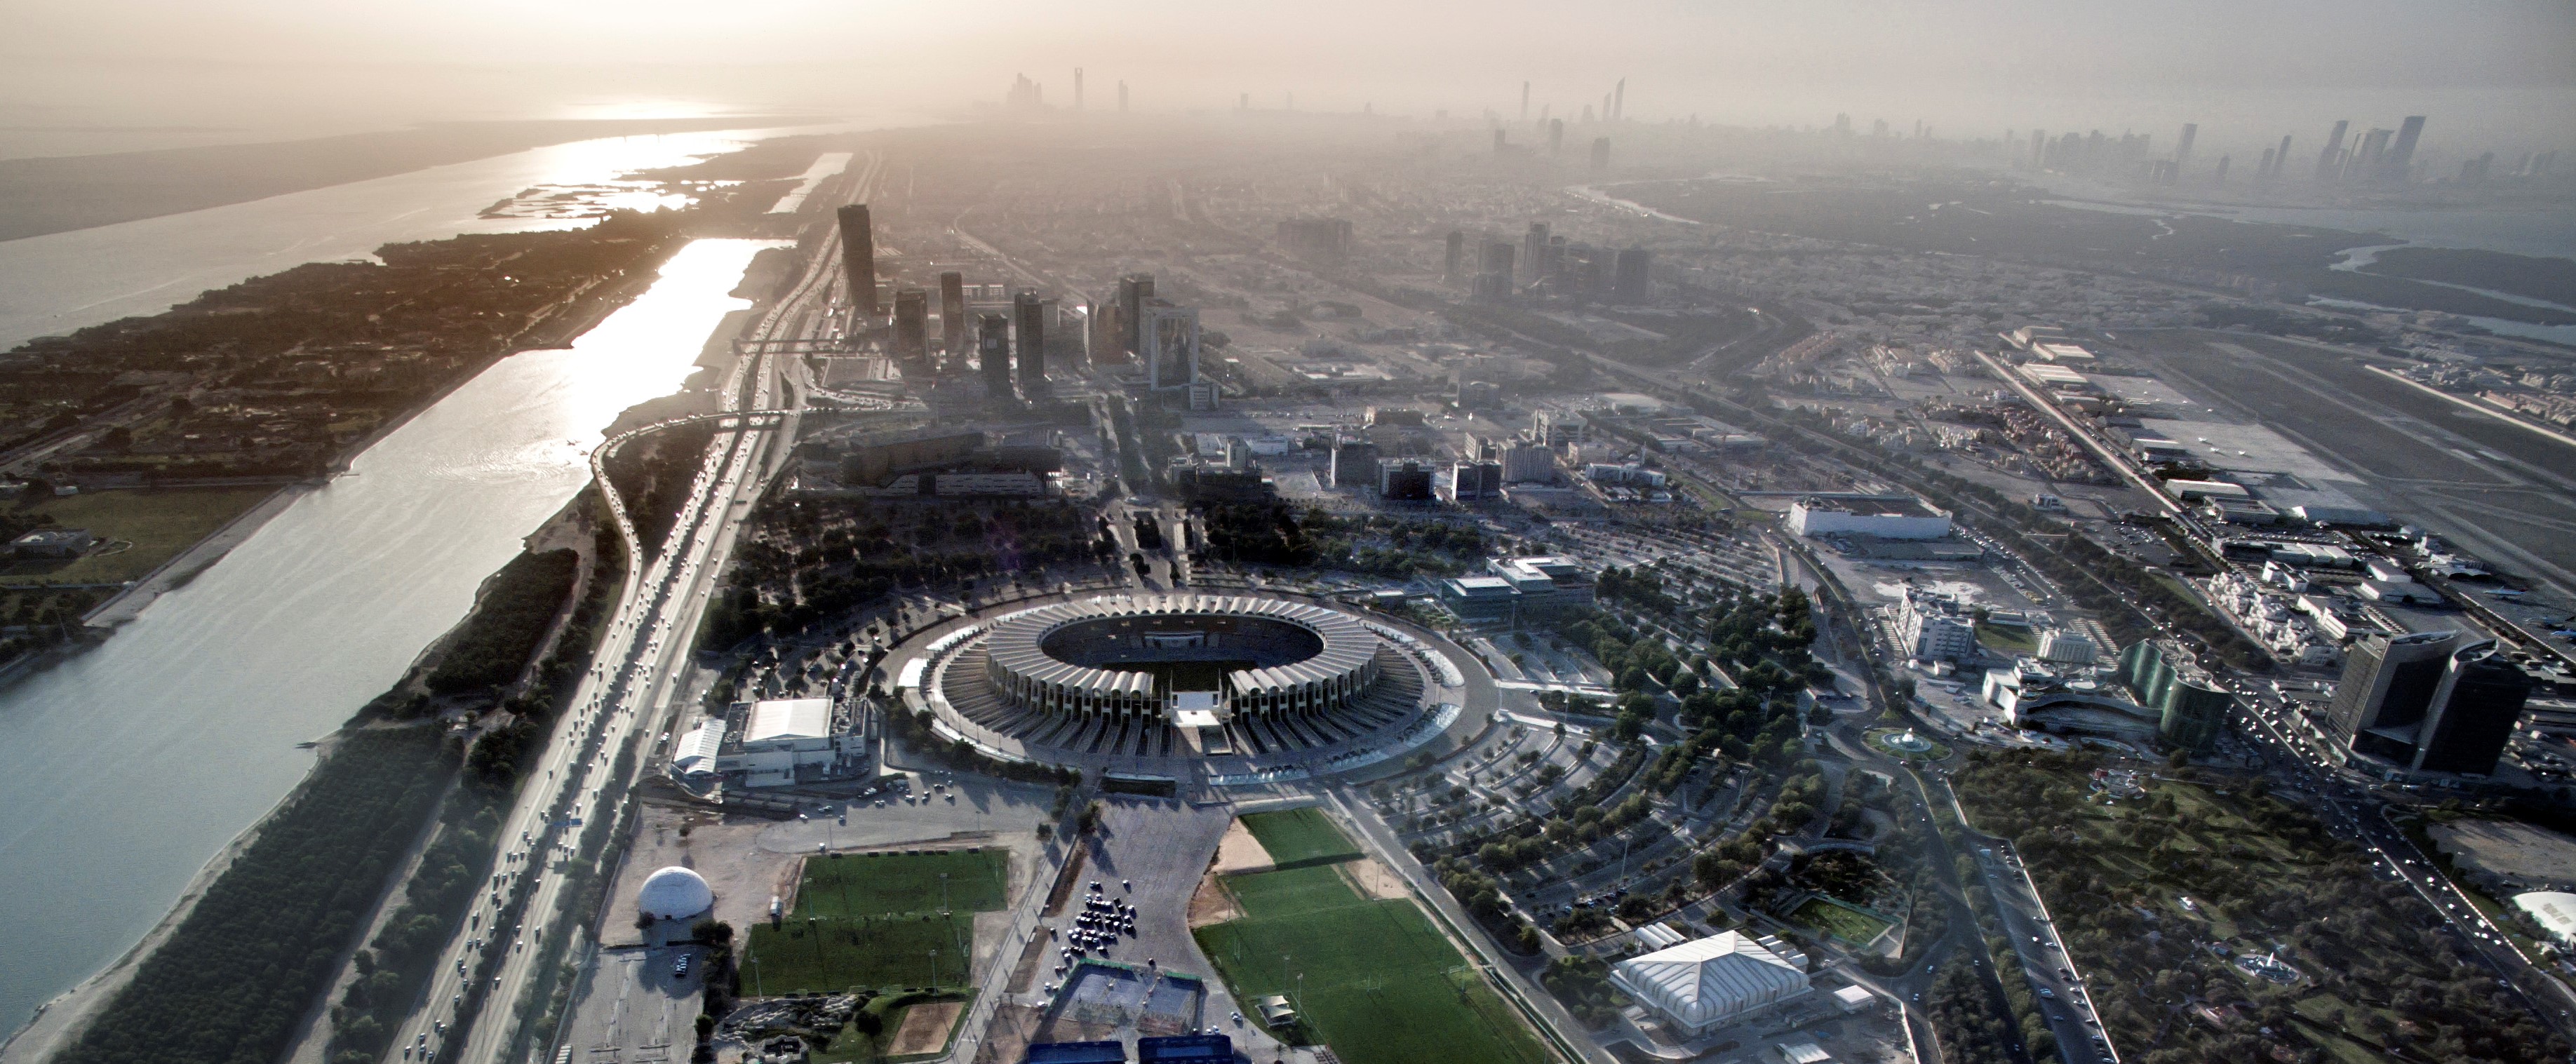 بطولة كأس العالم للأندية الإمارات FIFA 2017 تكشف النقاب عن مجموعة من باقات السفر الجاذبة لعشاق كرة القدم في معرض سوق السفر العربي (3)